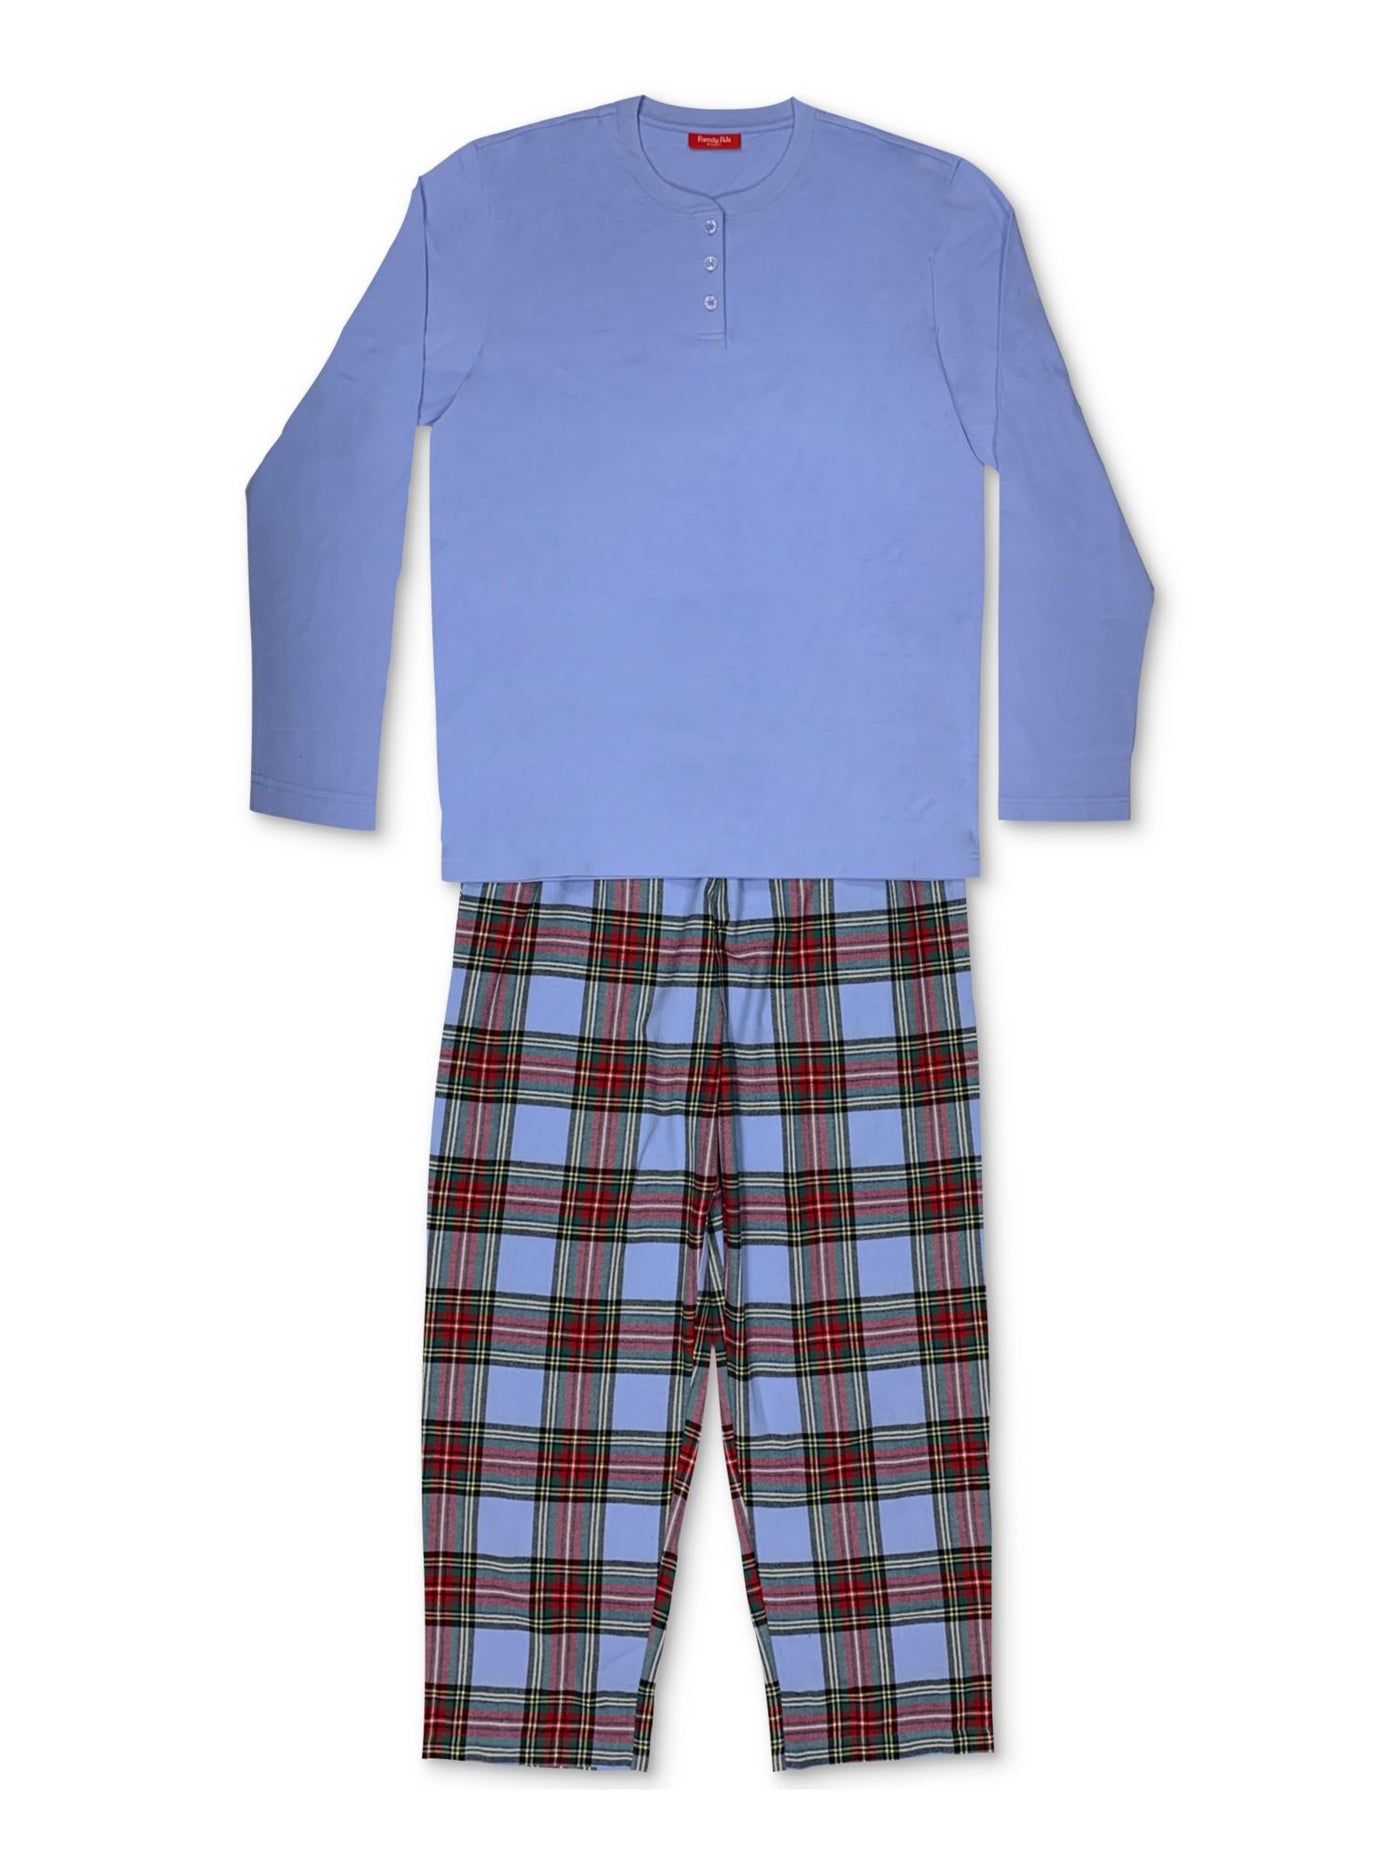 FAMILY PJs Intimates Navy Set Plaid Pajamas XL